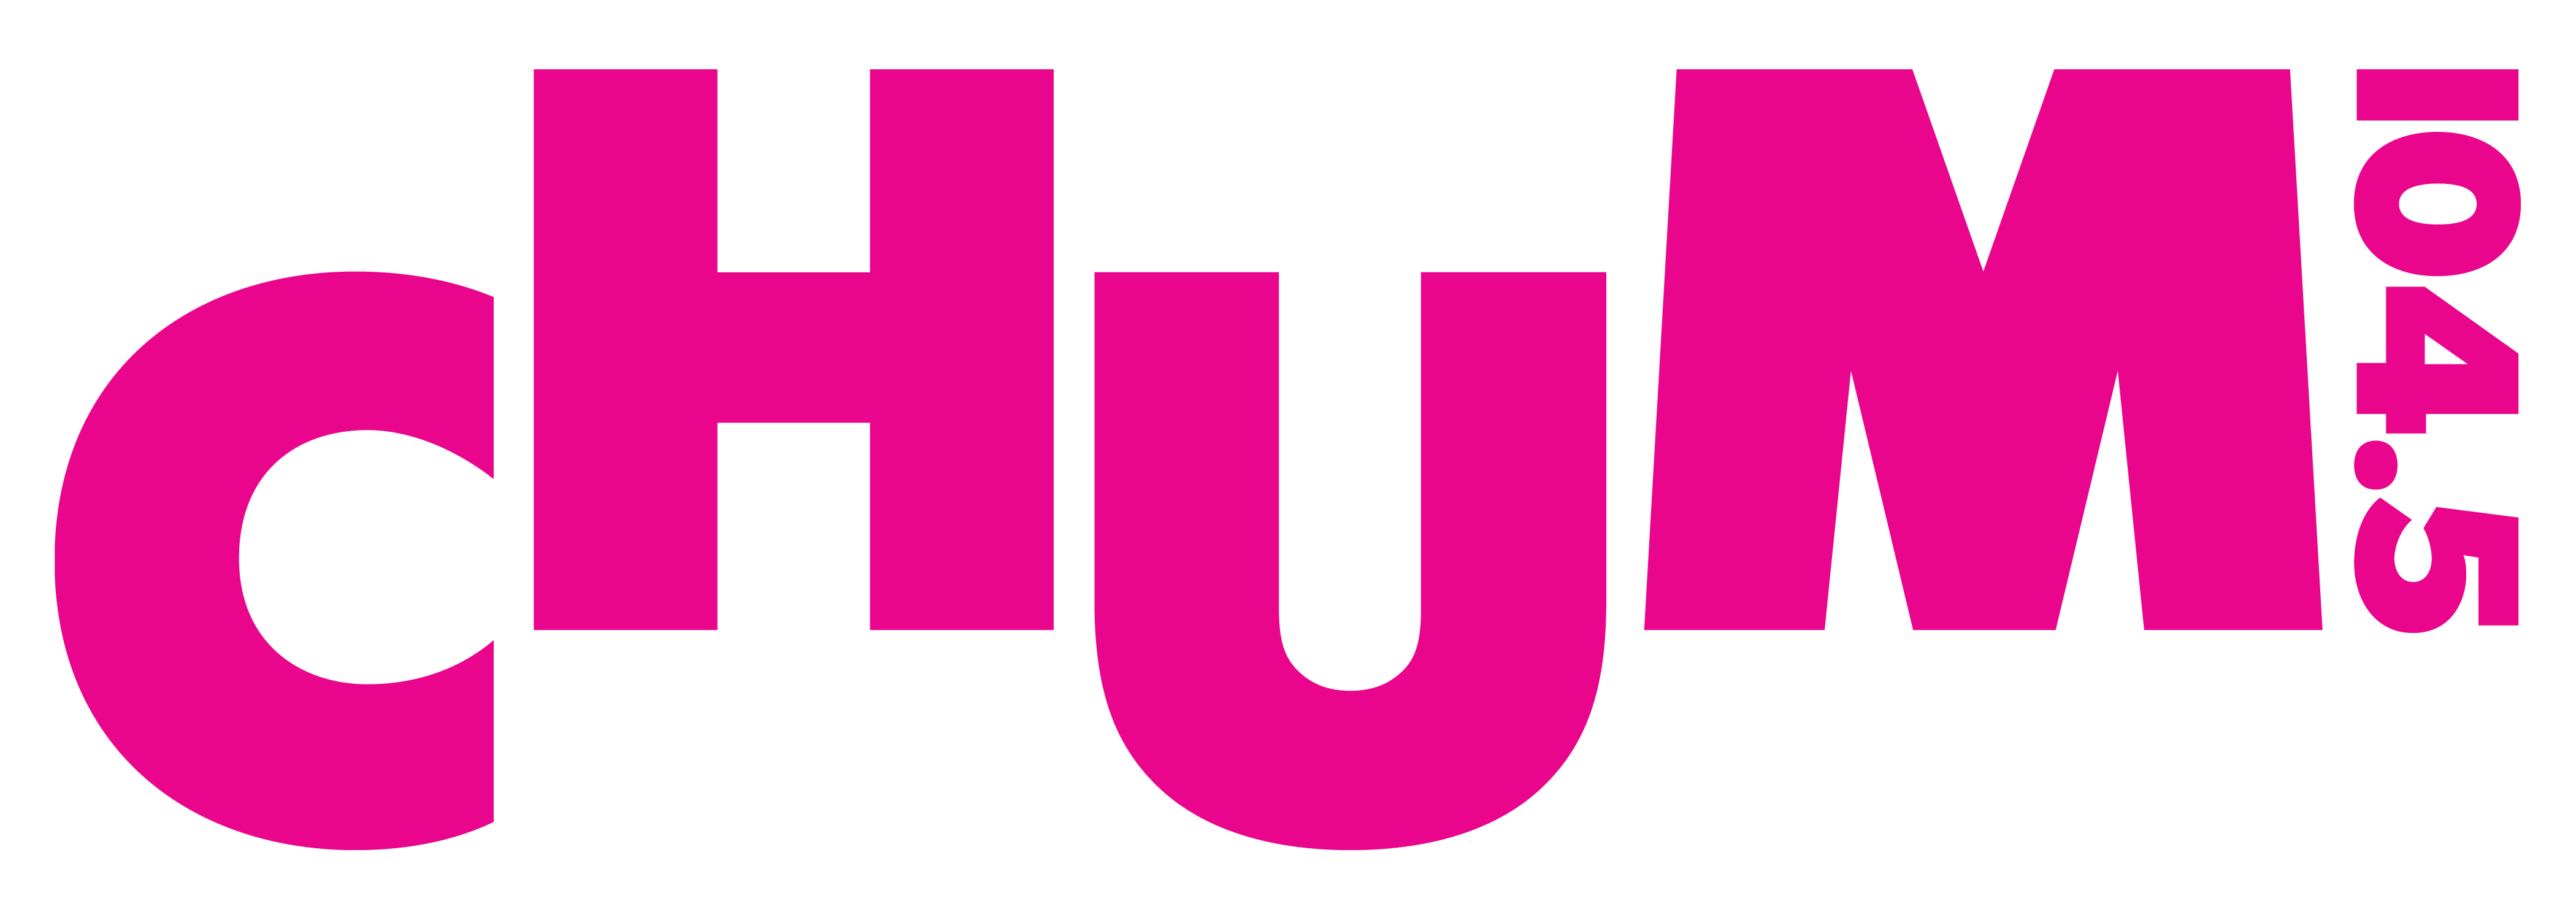 CHUM 104.5 logo.